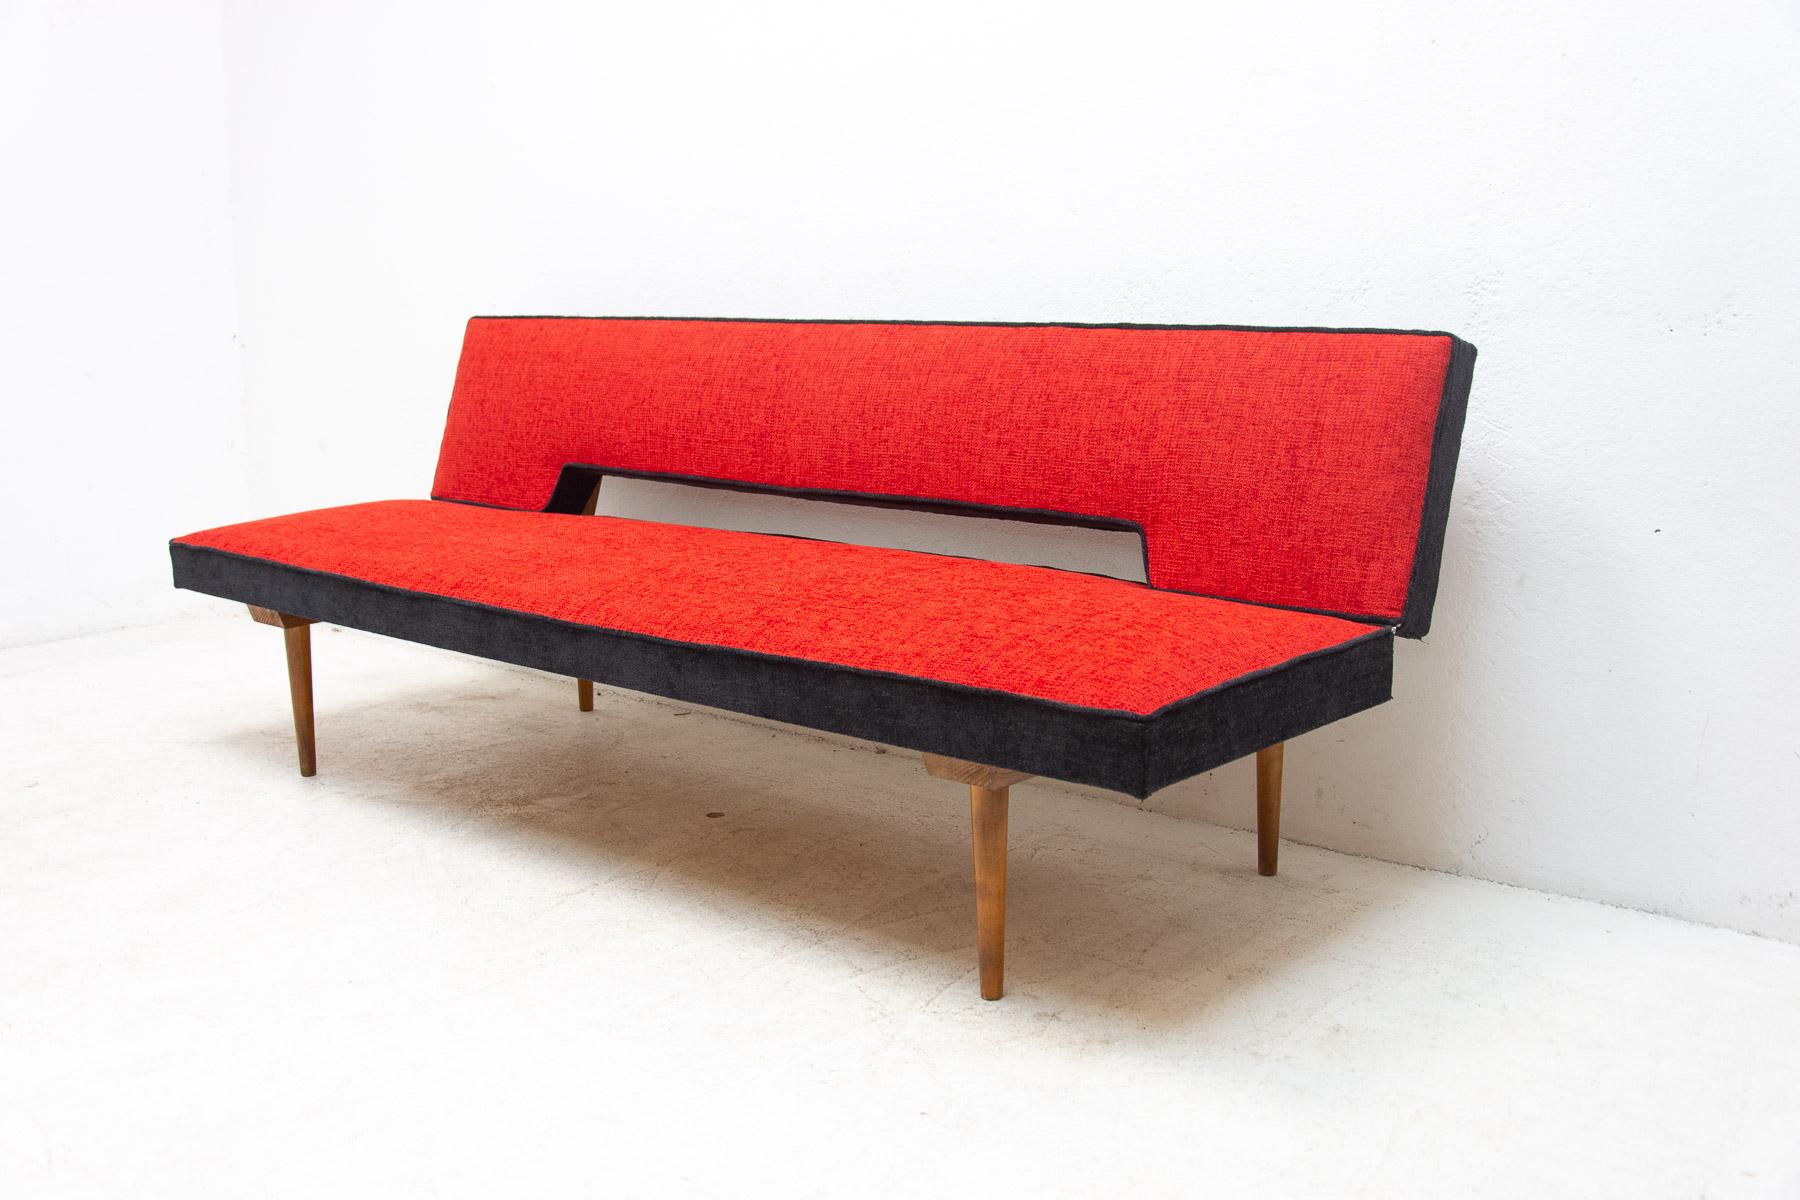 Sofa/Tagesbett aus der Mitte des Jahrhunderts, hergestellt in der ehemaligen Tschechoslowakei in den 1960er Jahren, entworfen von Miroslav Navrátil. MATERIAL: Buchenholz, Stoff. Das Sofa ist in ausgezeichnetem Zustand, vollständig renoviert und neu